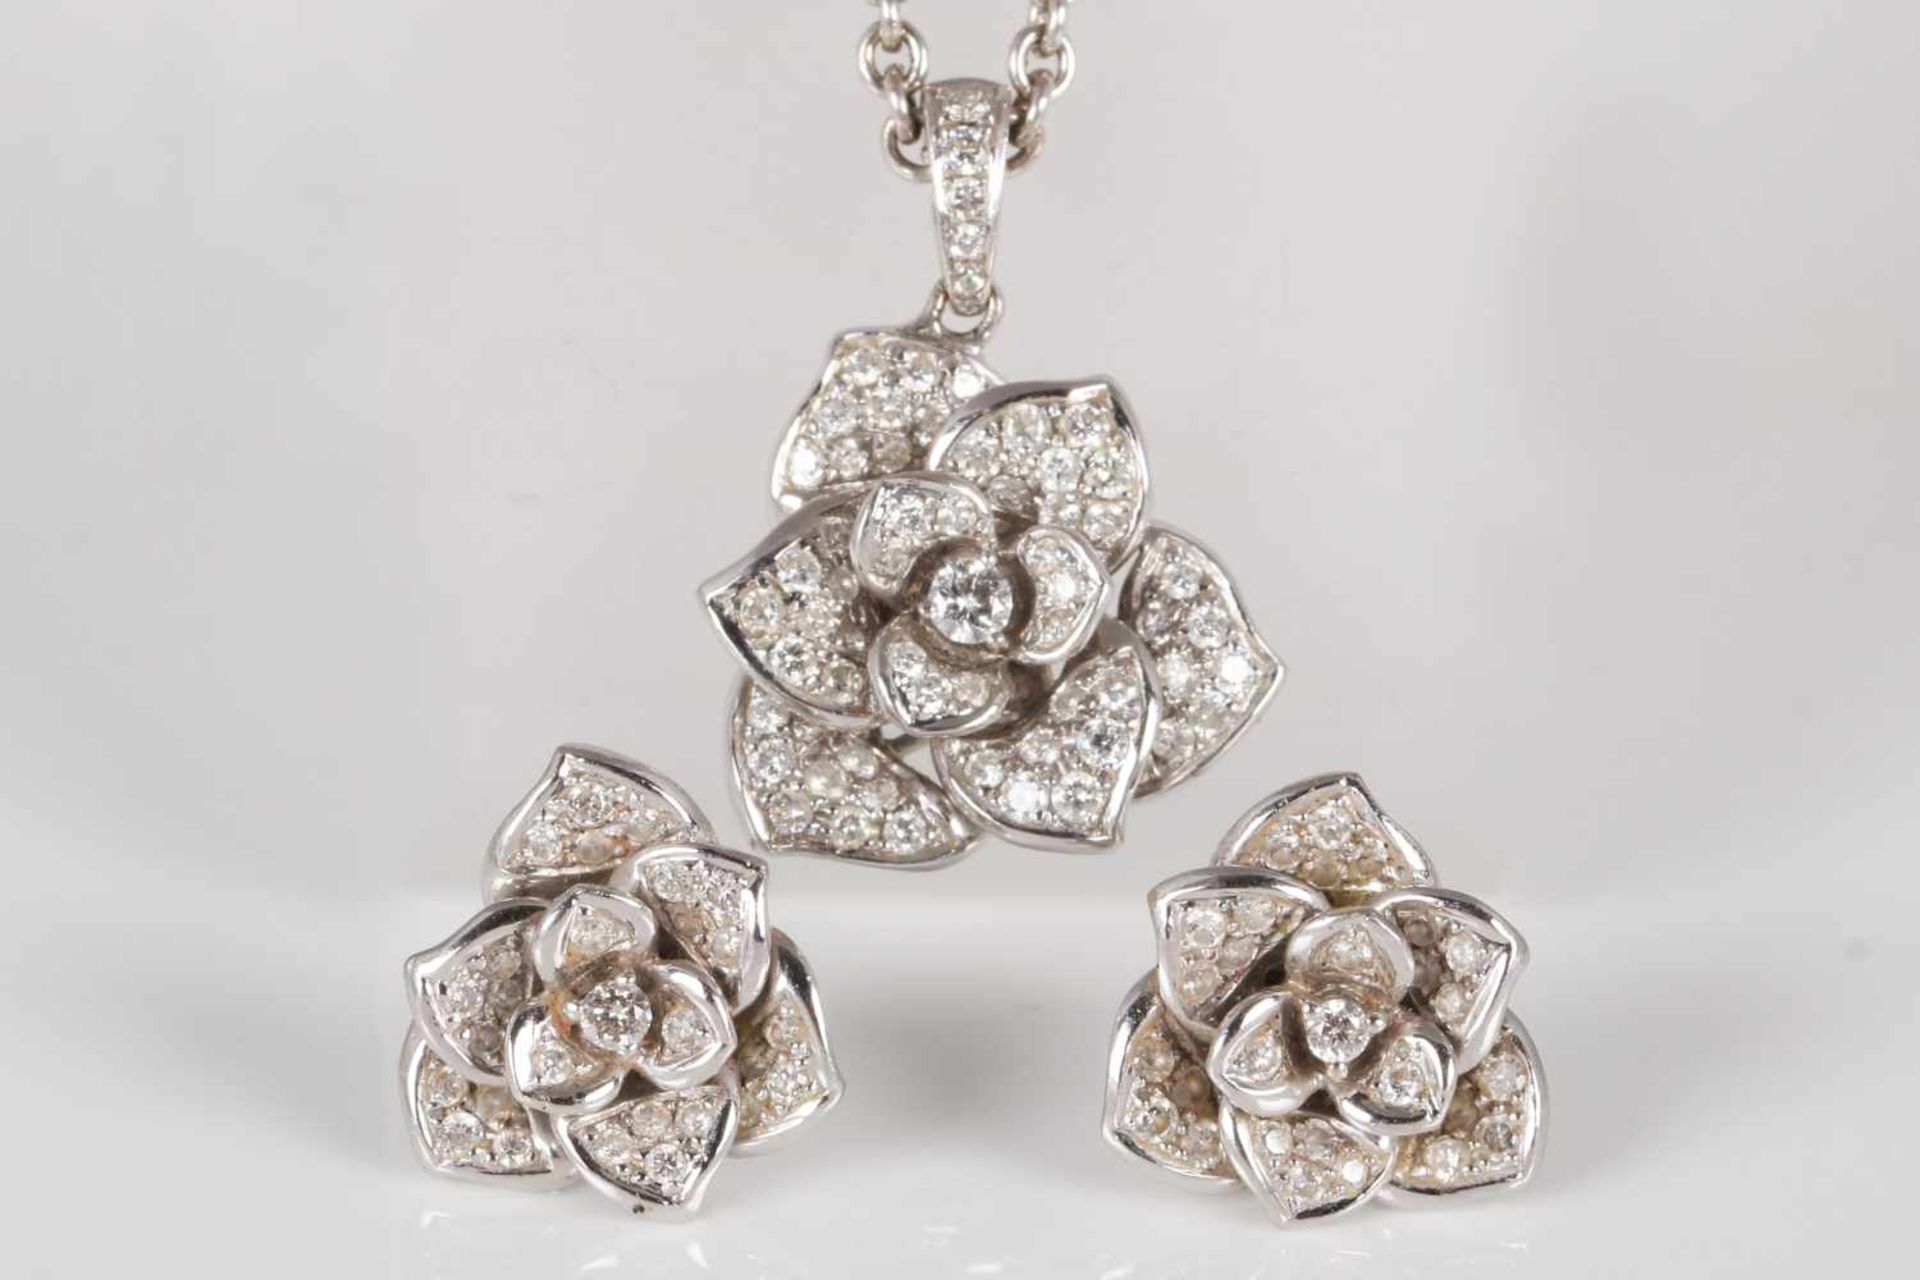 Schmuck-Set mit Diamanten750er Weißgold und Diamanten, 1 Paar Ohrstecker in Blütenform mit